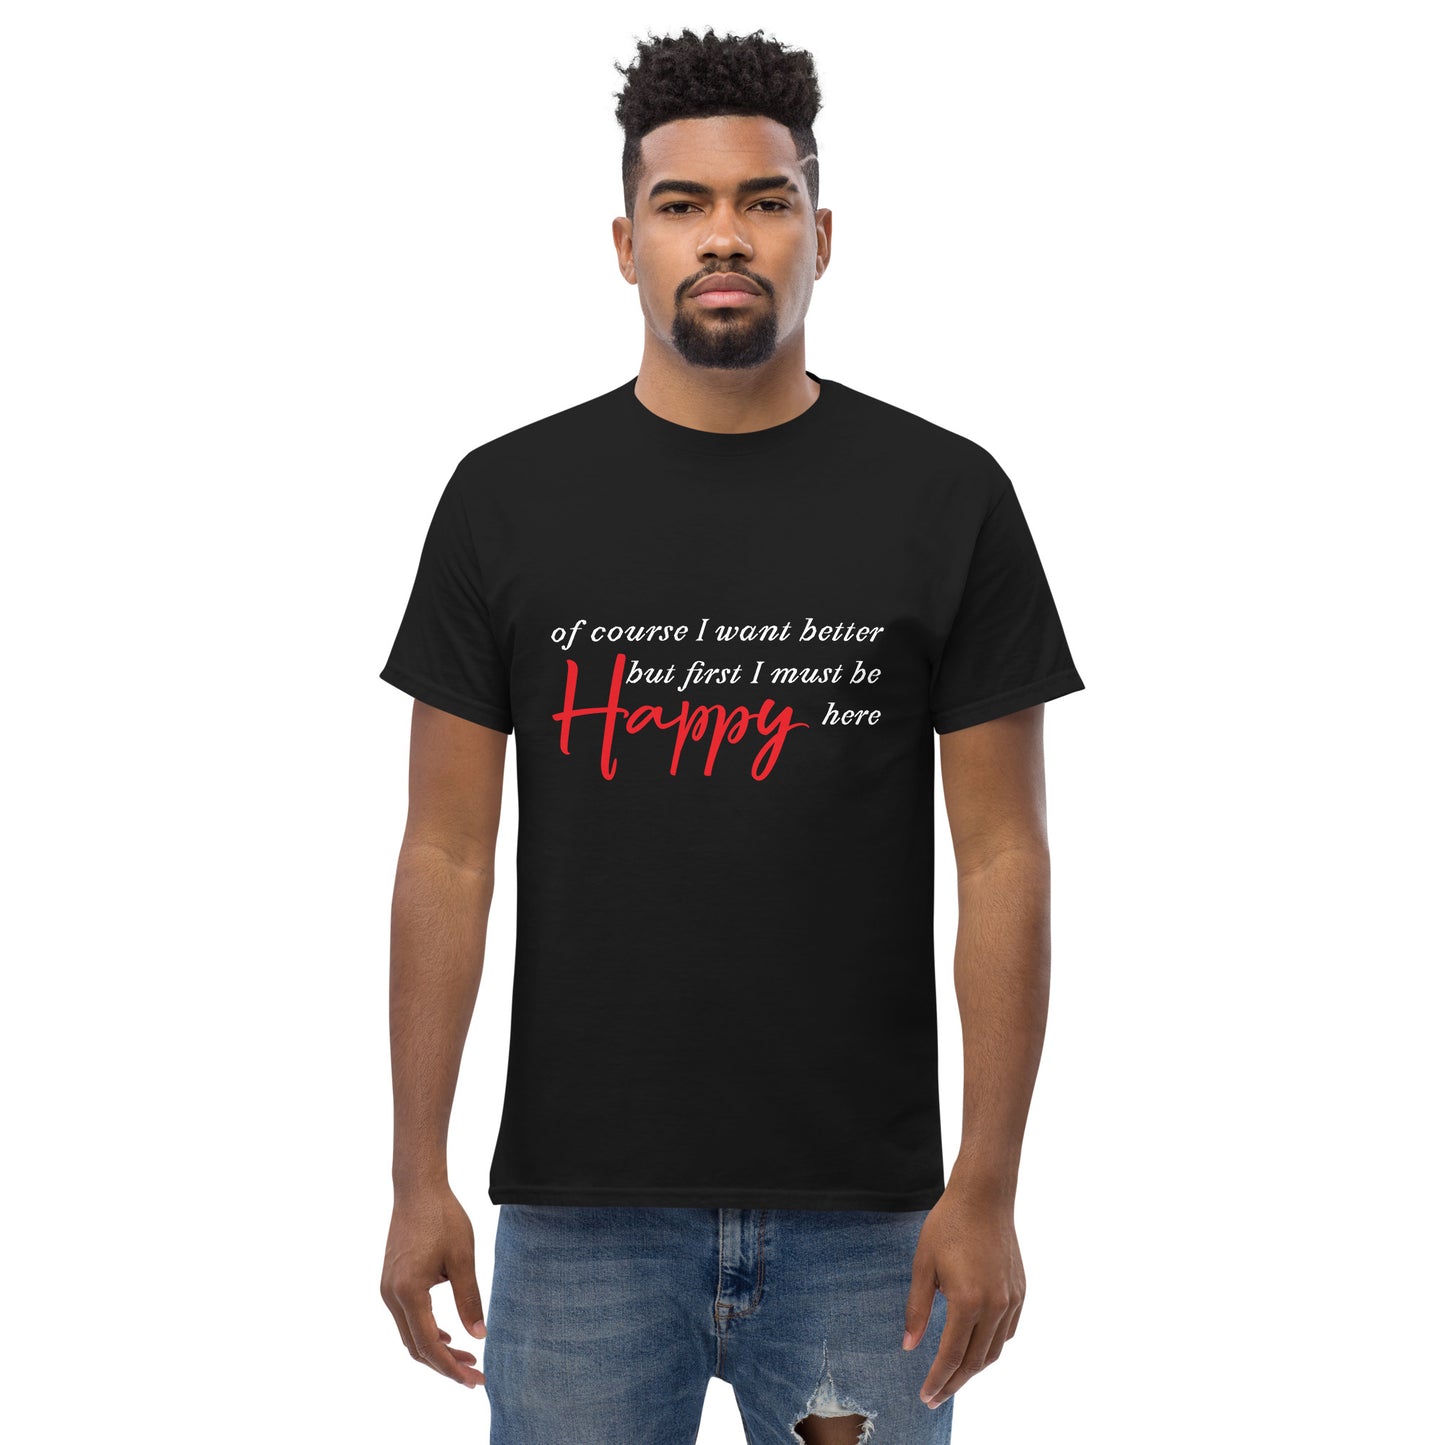 "Happy Here" Unisex classic tee